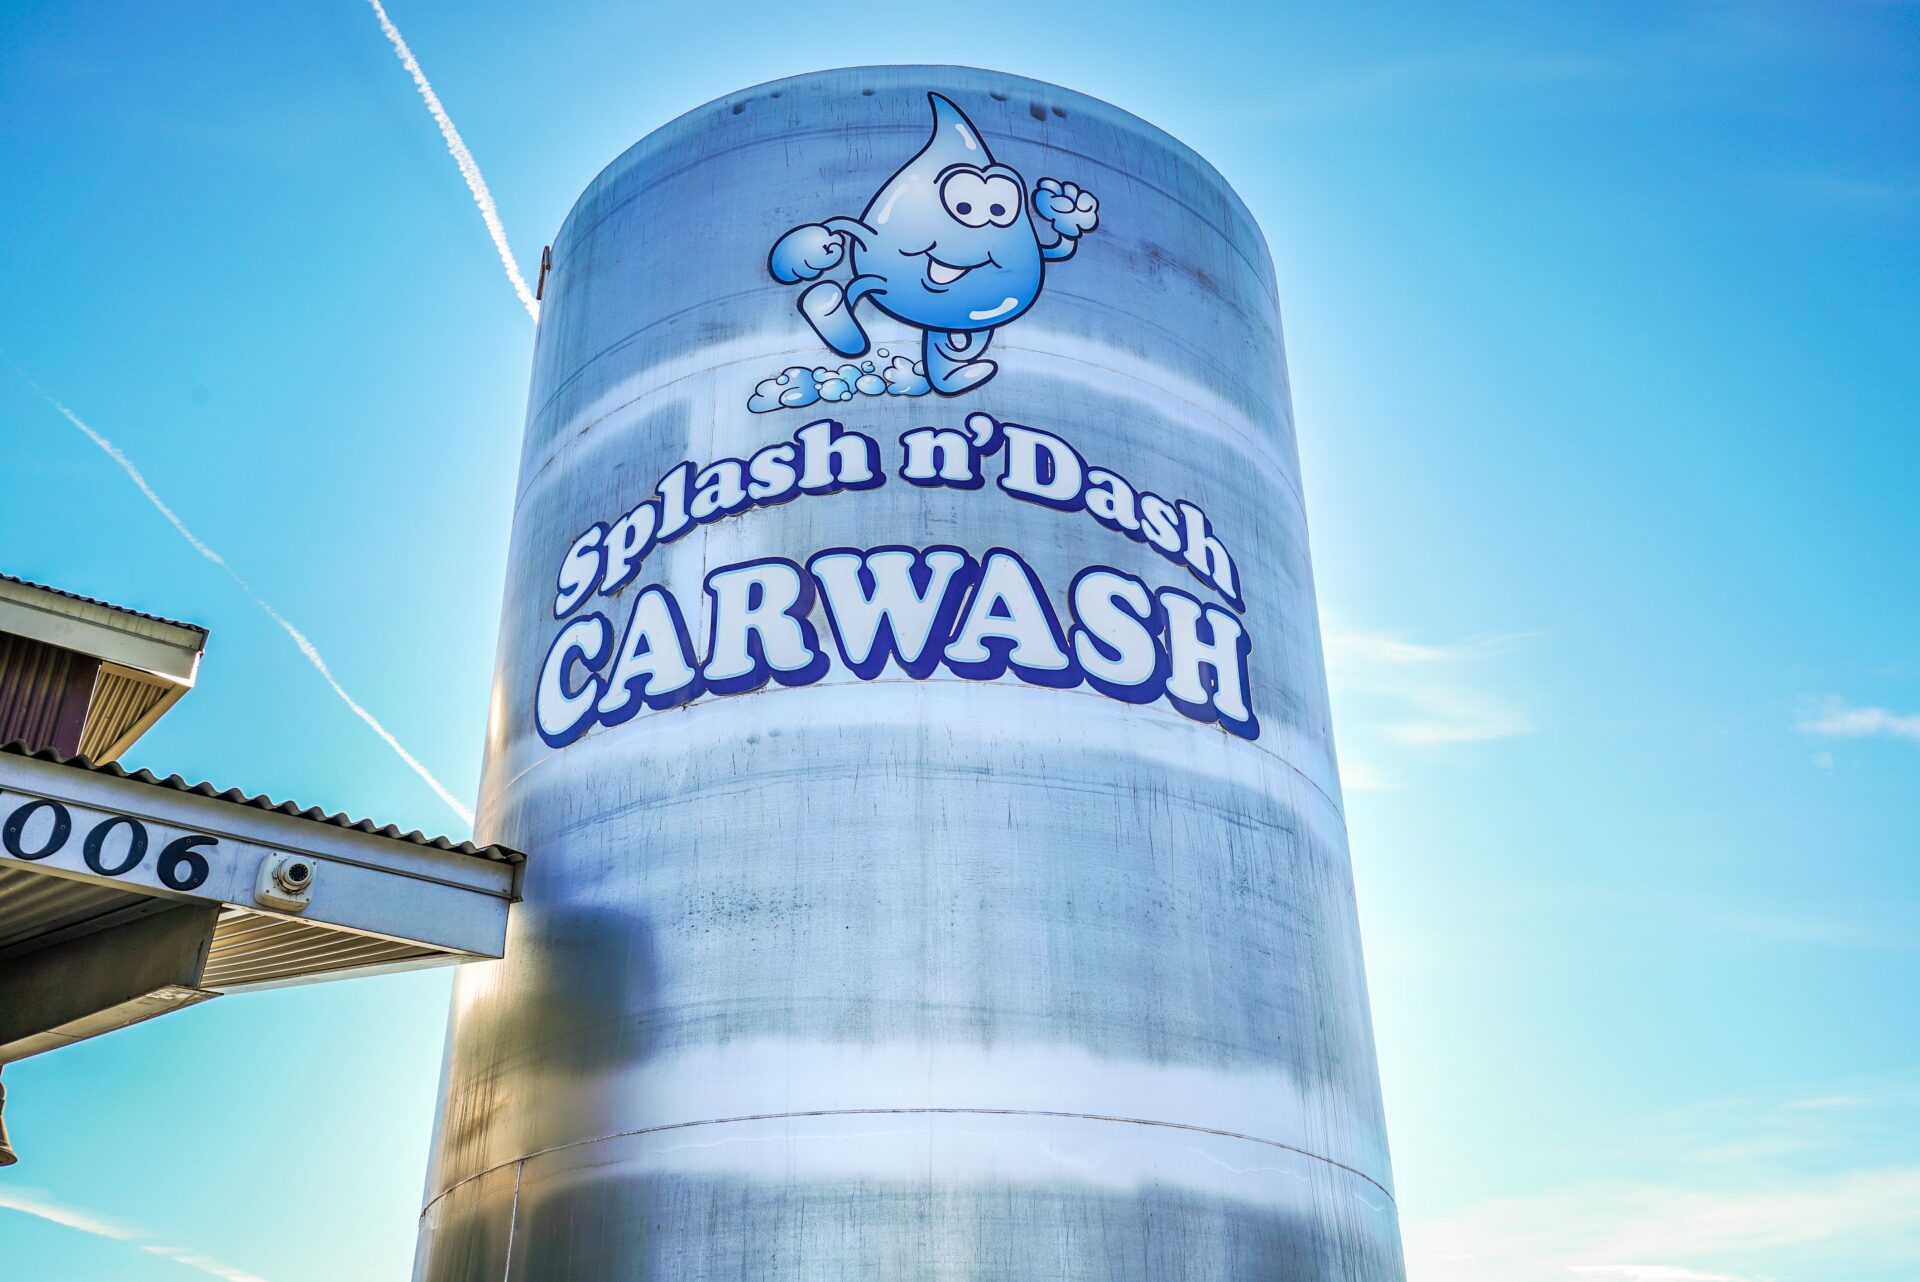 Water tank with Splash n’ Dash Carwash logo